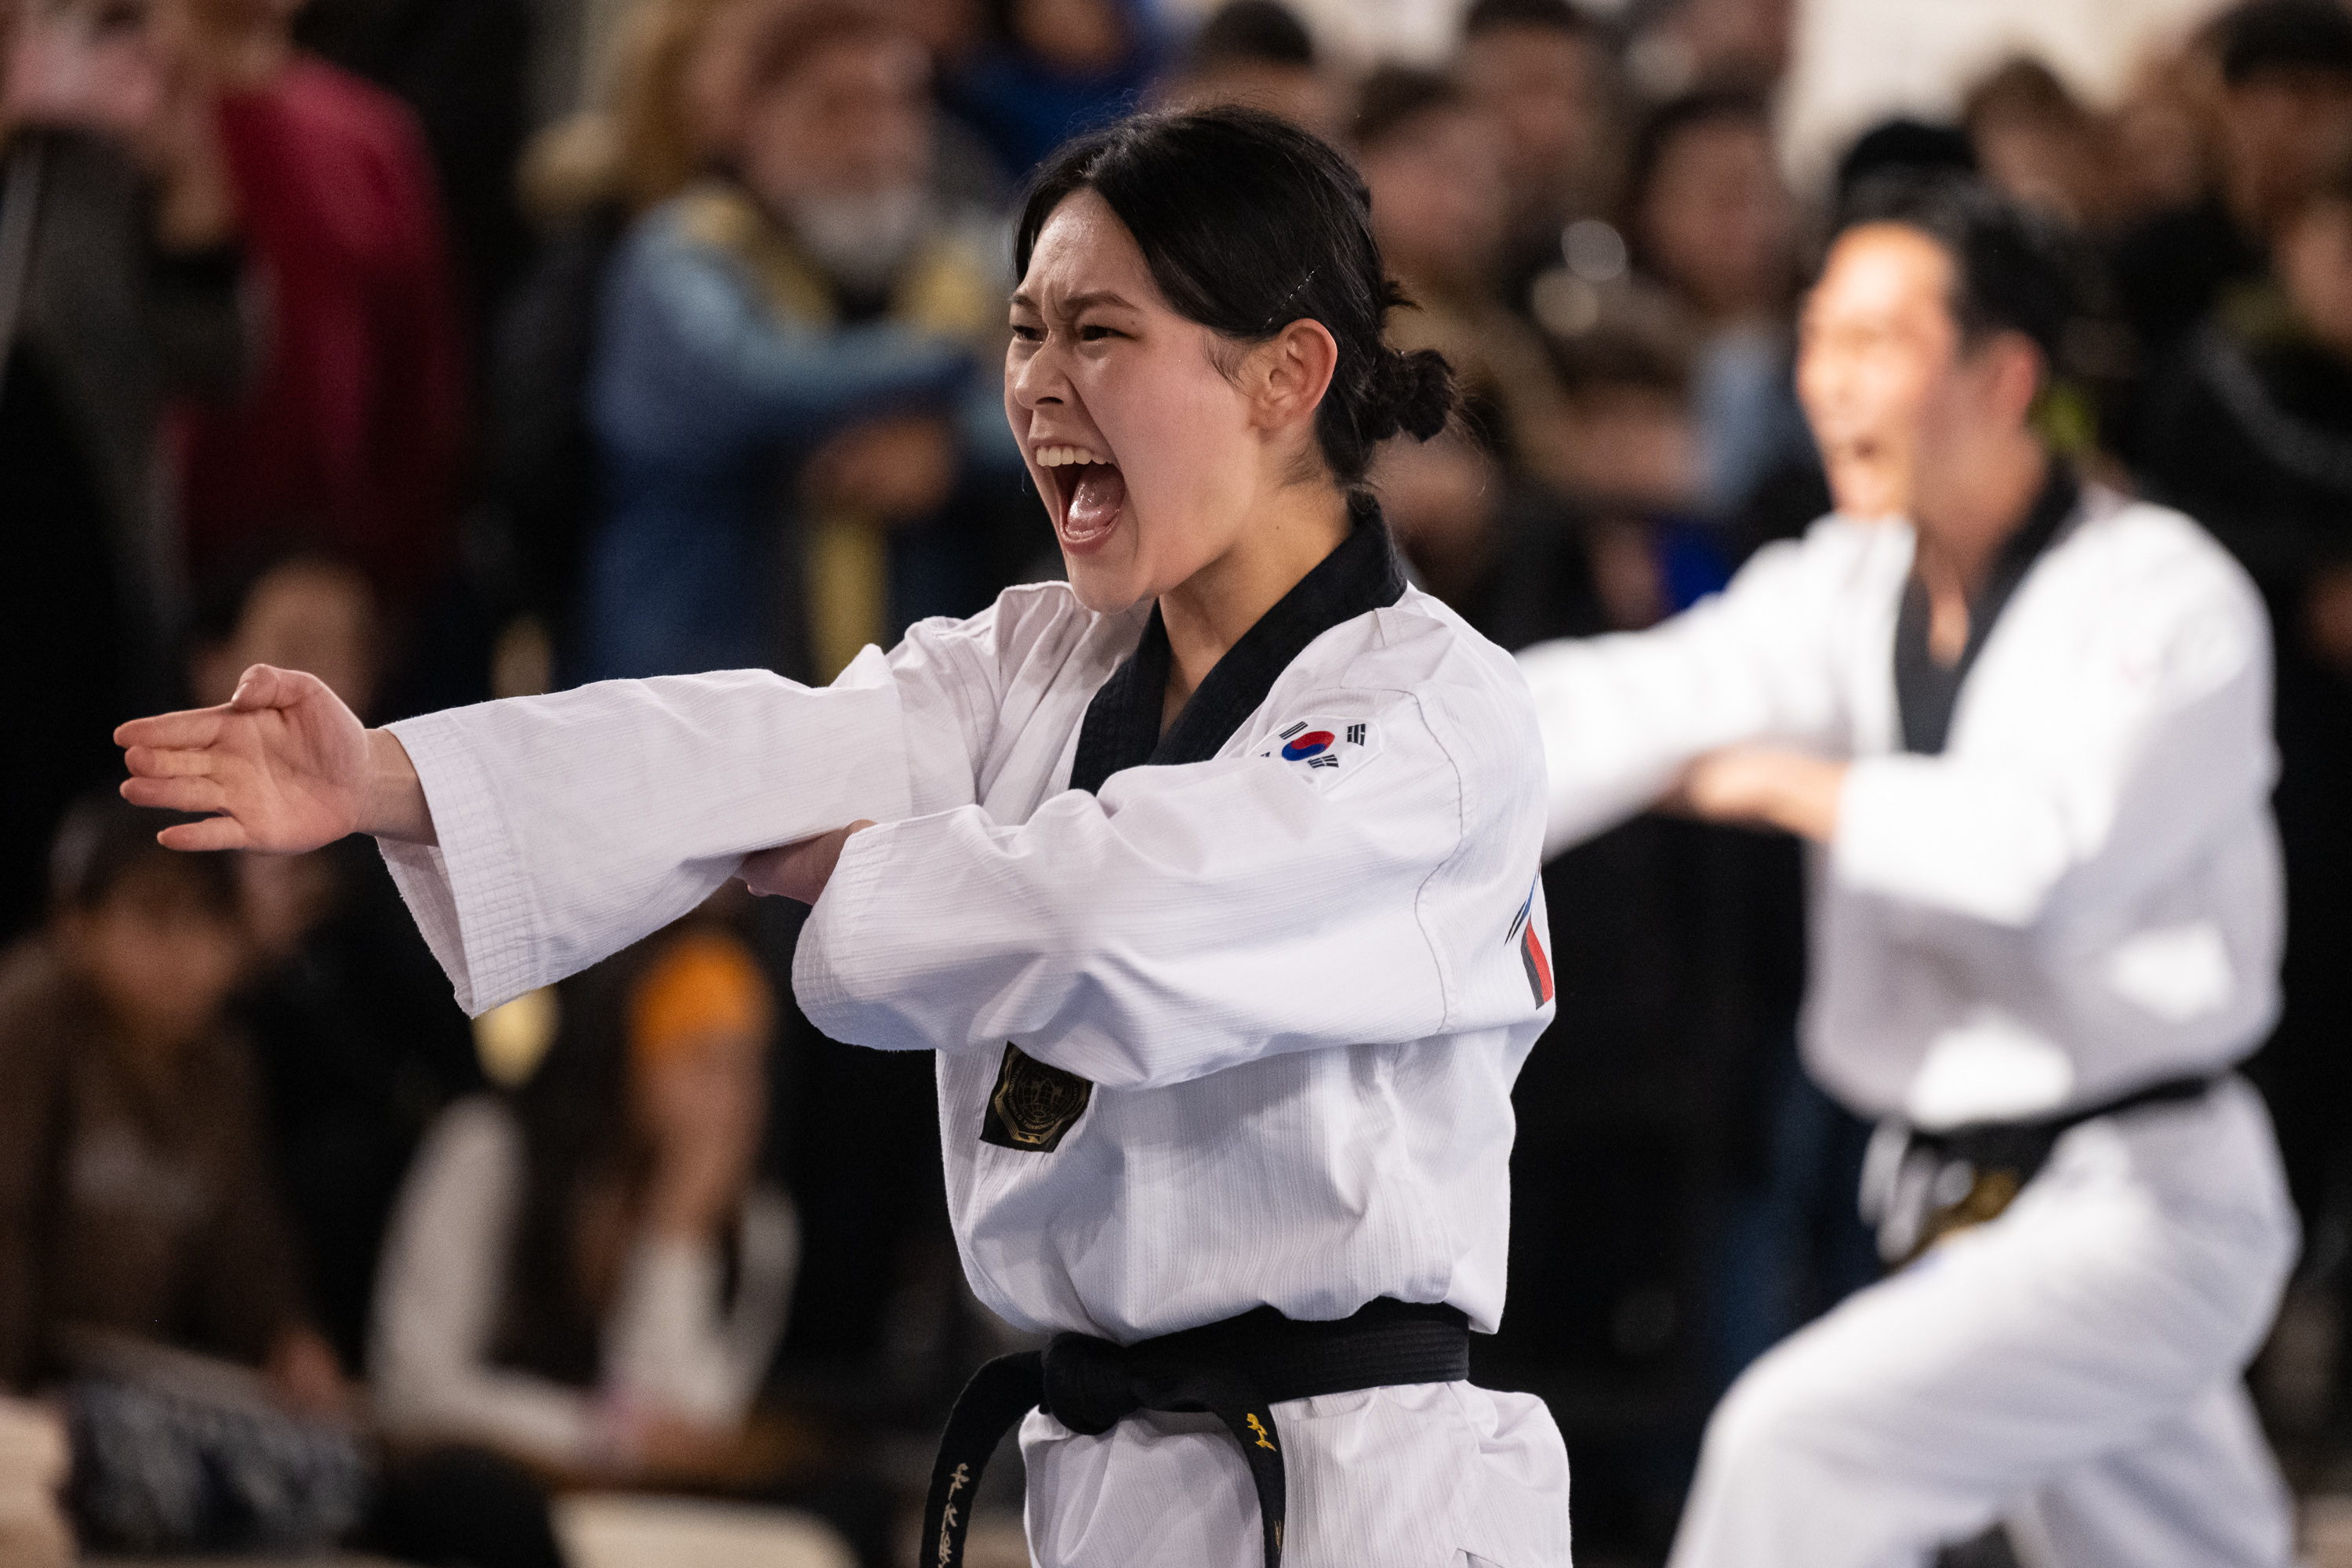 Demostración de Taekwondo en conmemoración del 60° aniversario de las relaciones diplomáticas entre Corea y Uruguay